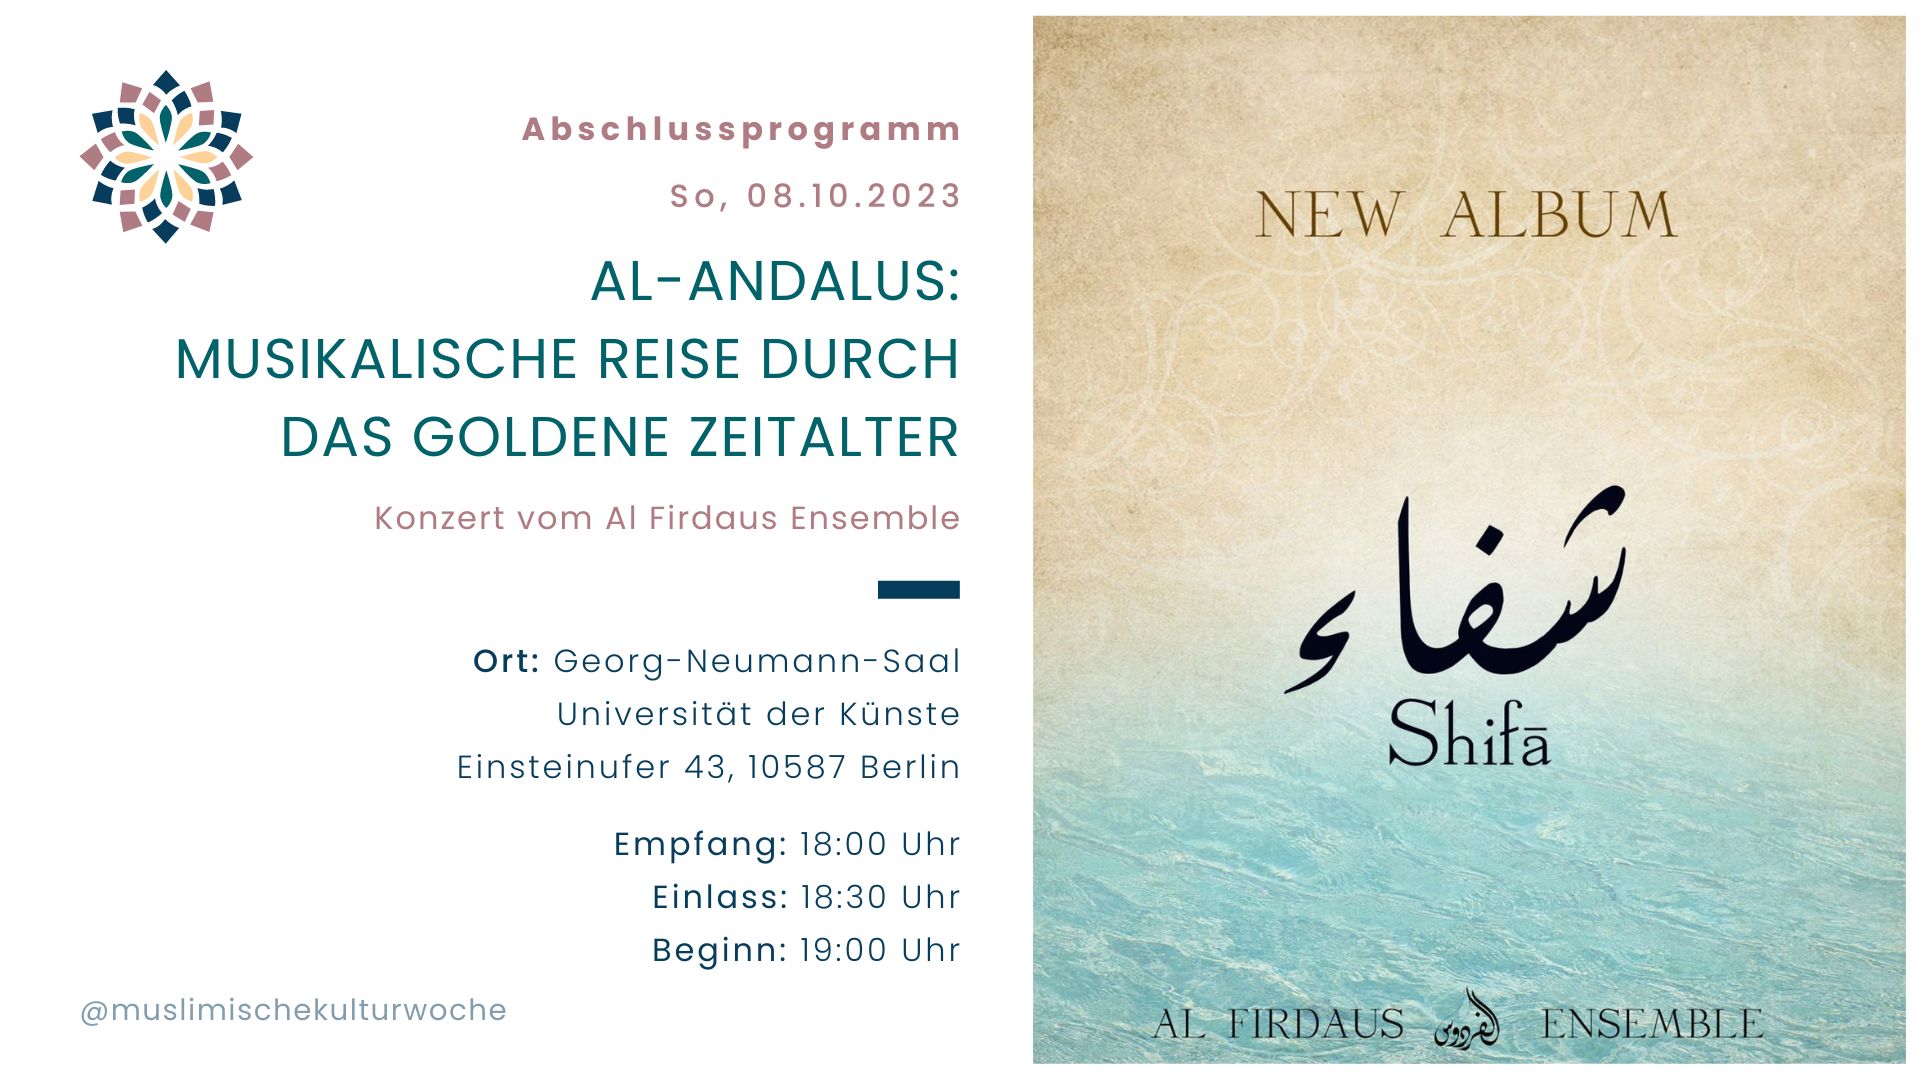 Al-Andalus: Musikalische Reise durch das goldene Zeitalter